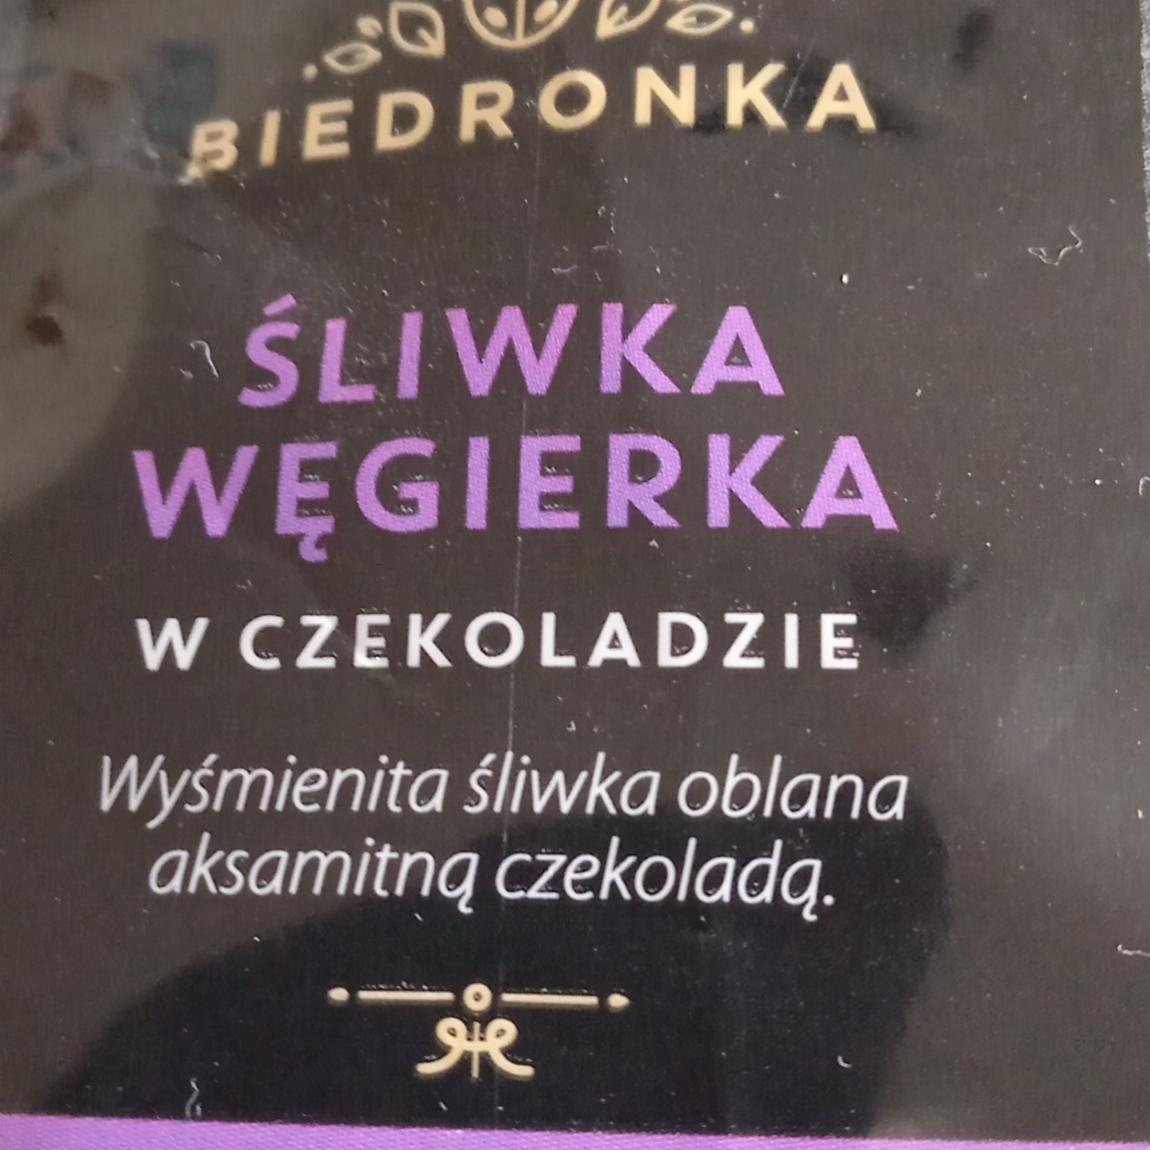 Zdjęcia - Śliwka węgierka w czekoladzie Biedronka 